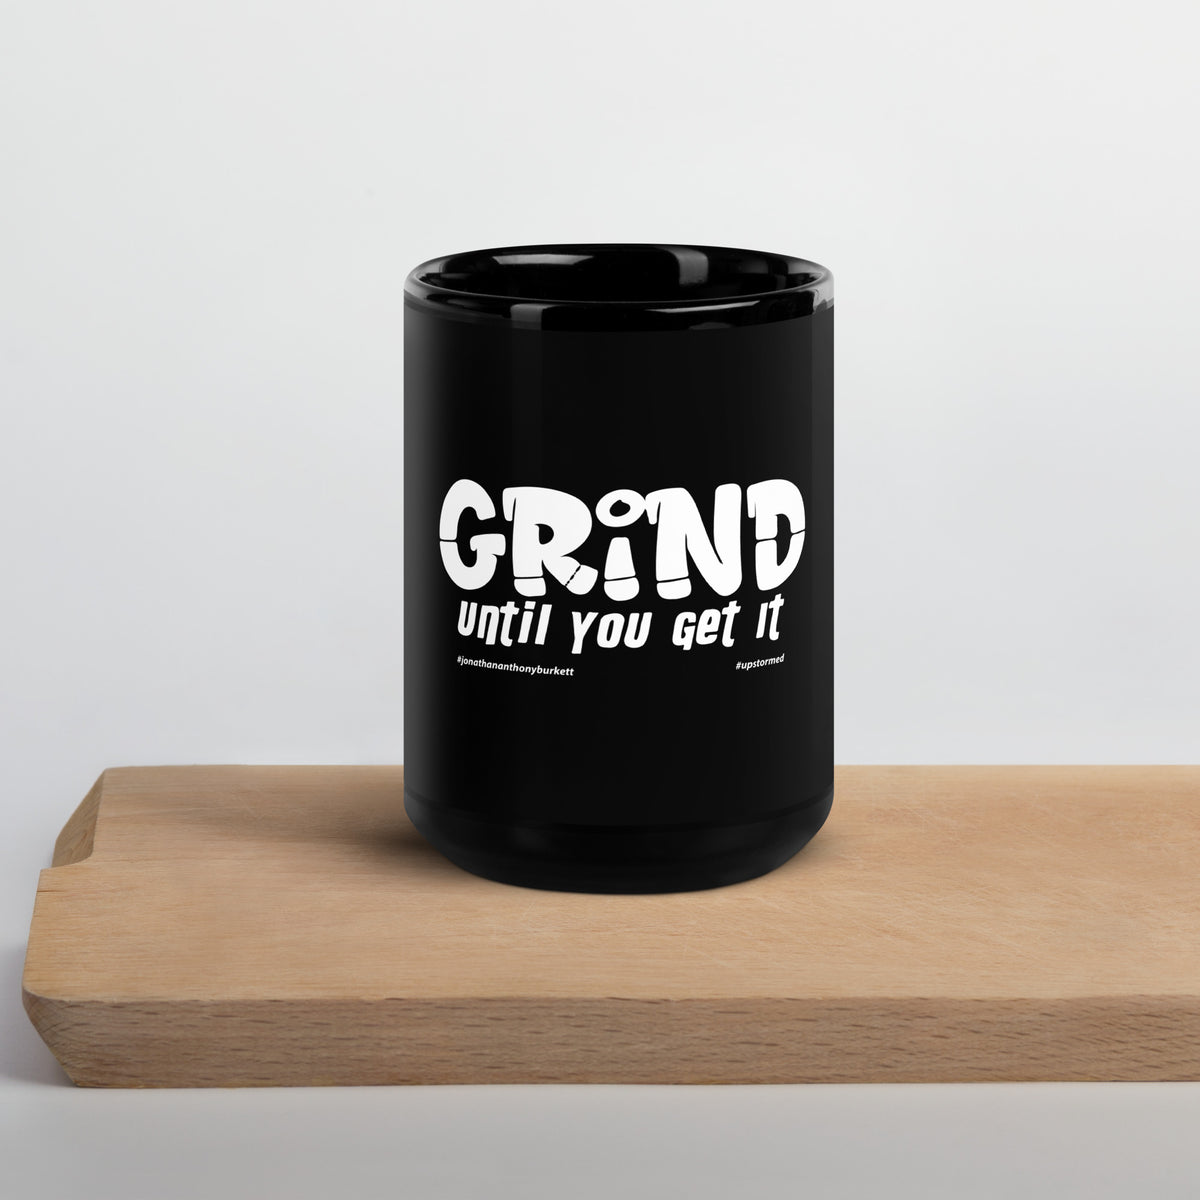 Grind Until You Get It Upstormed Black Glossy Mug